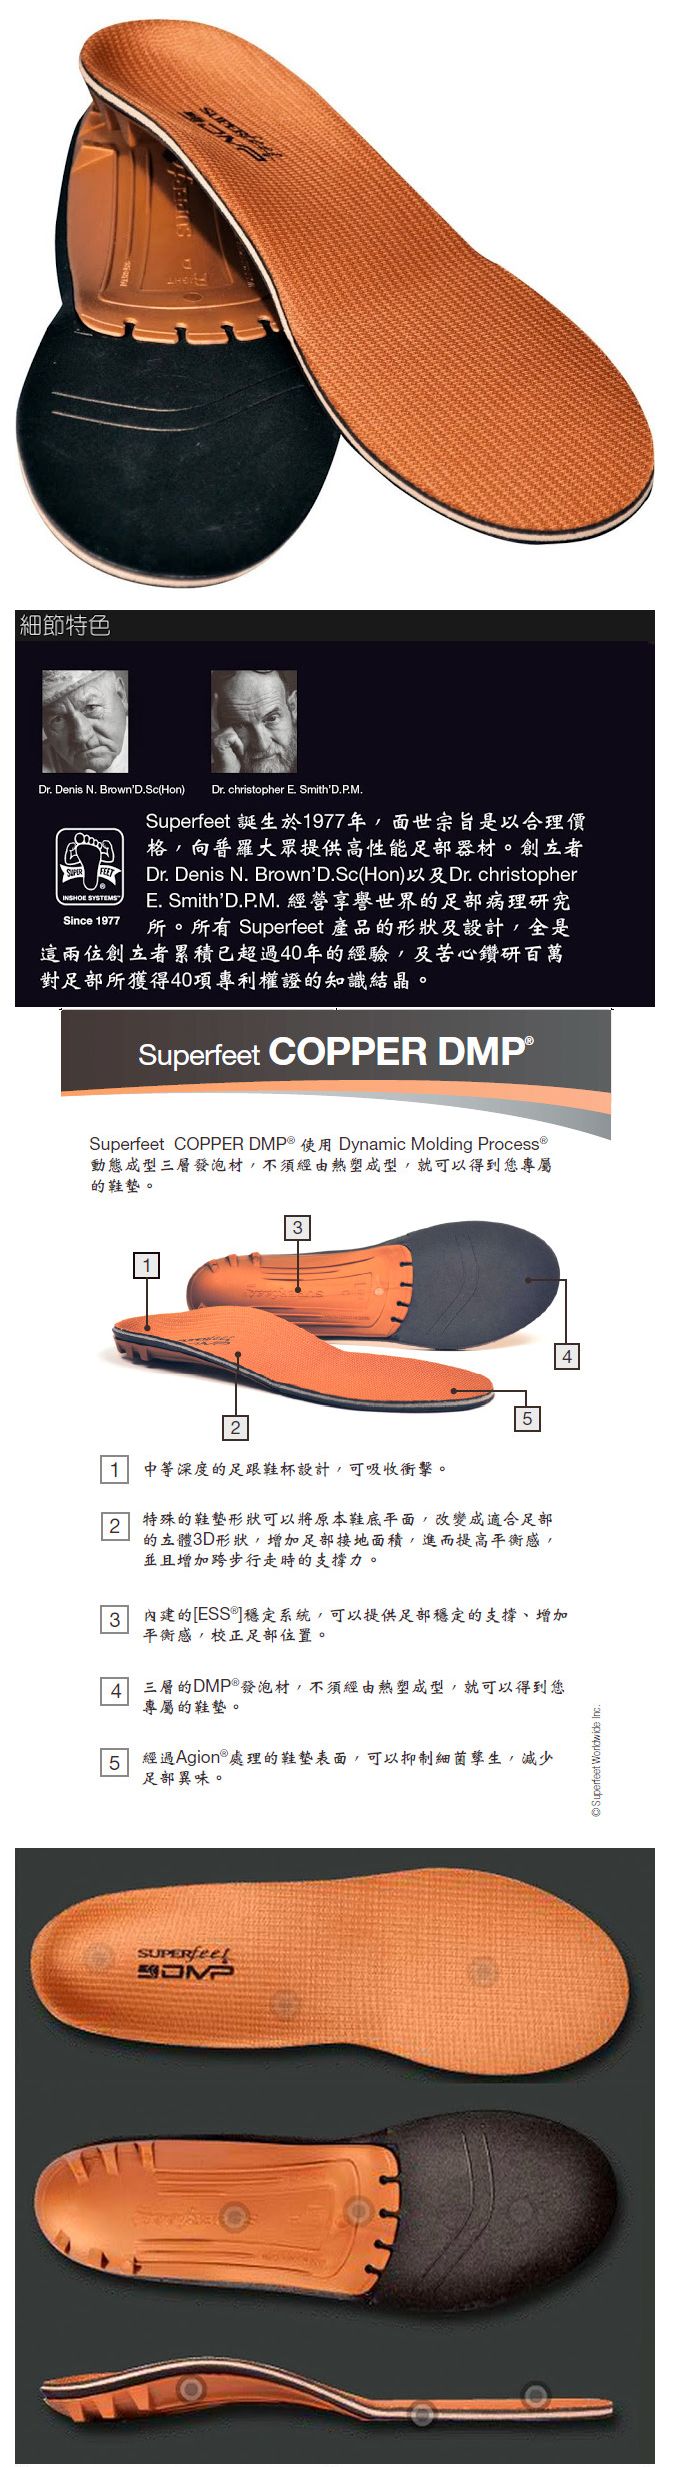 superfeet copper dmp